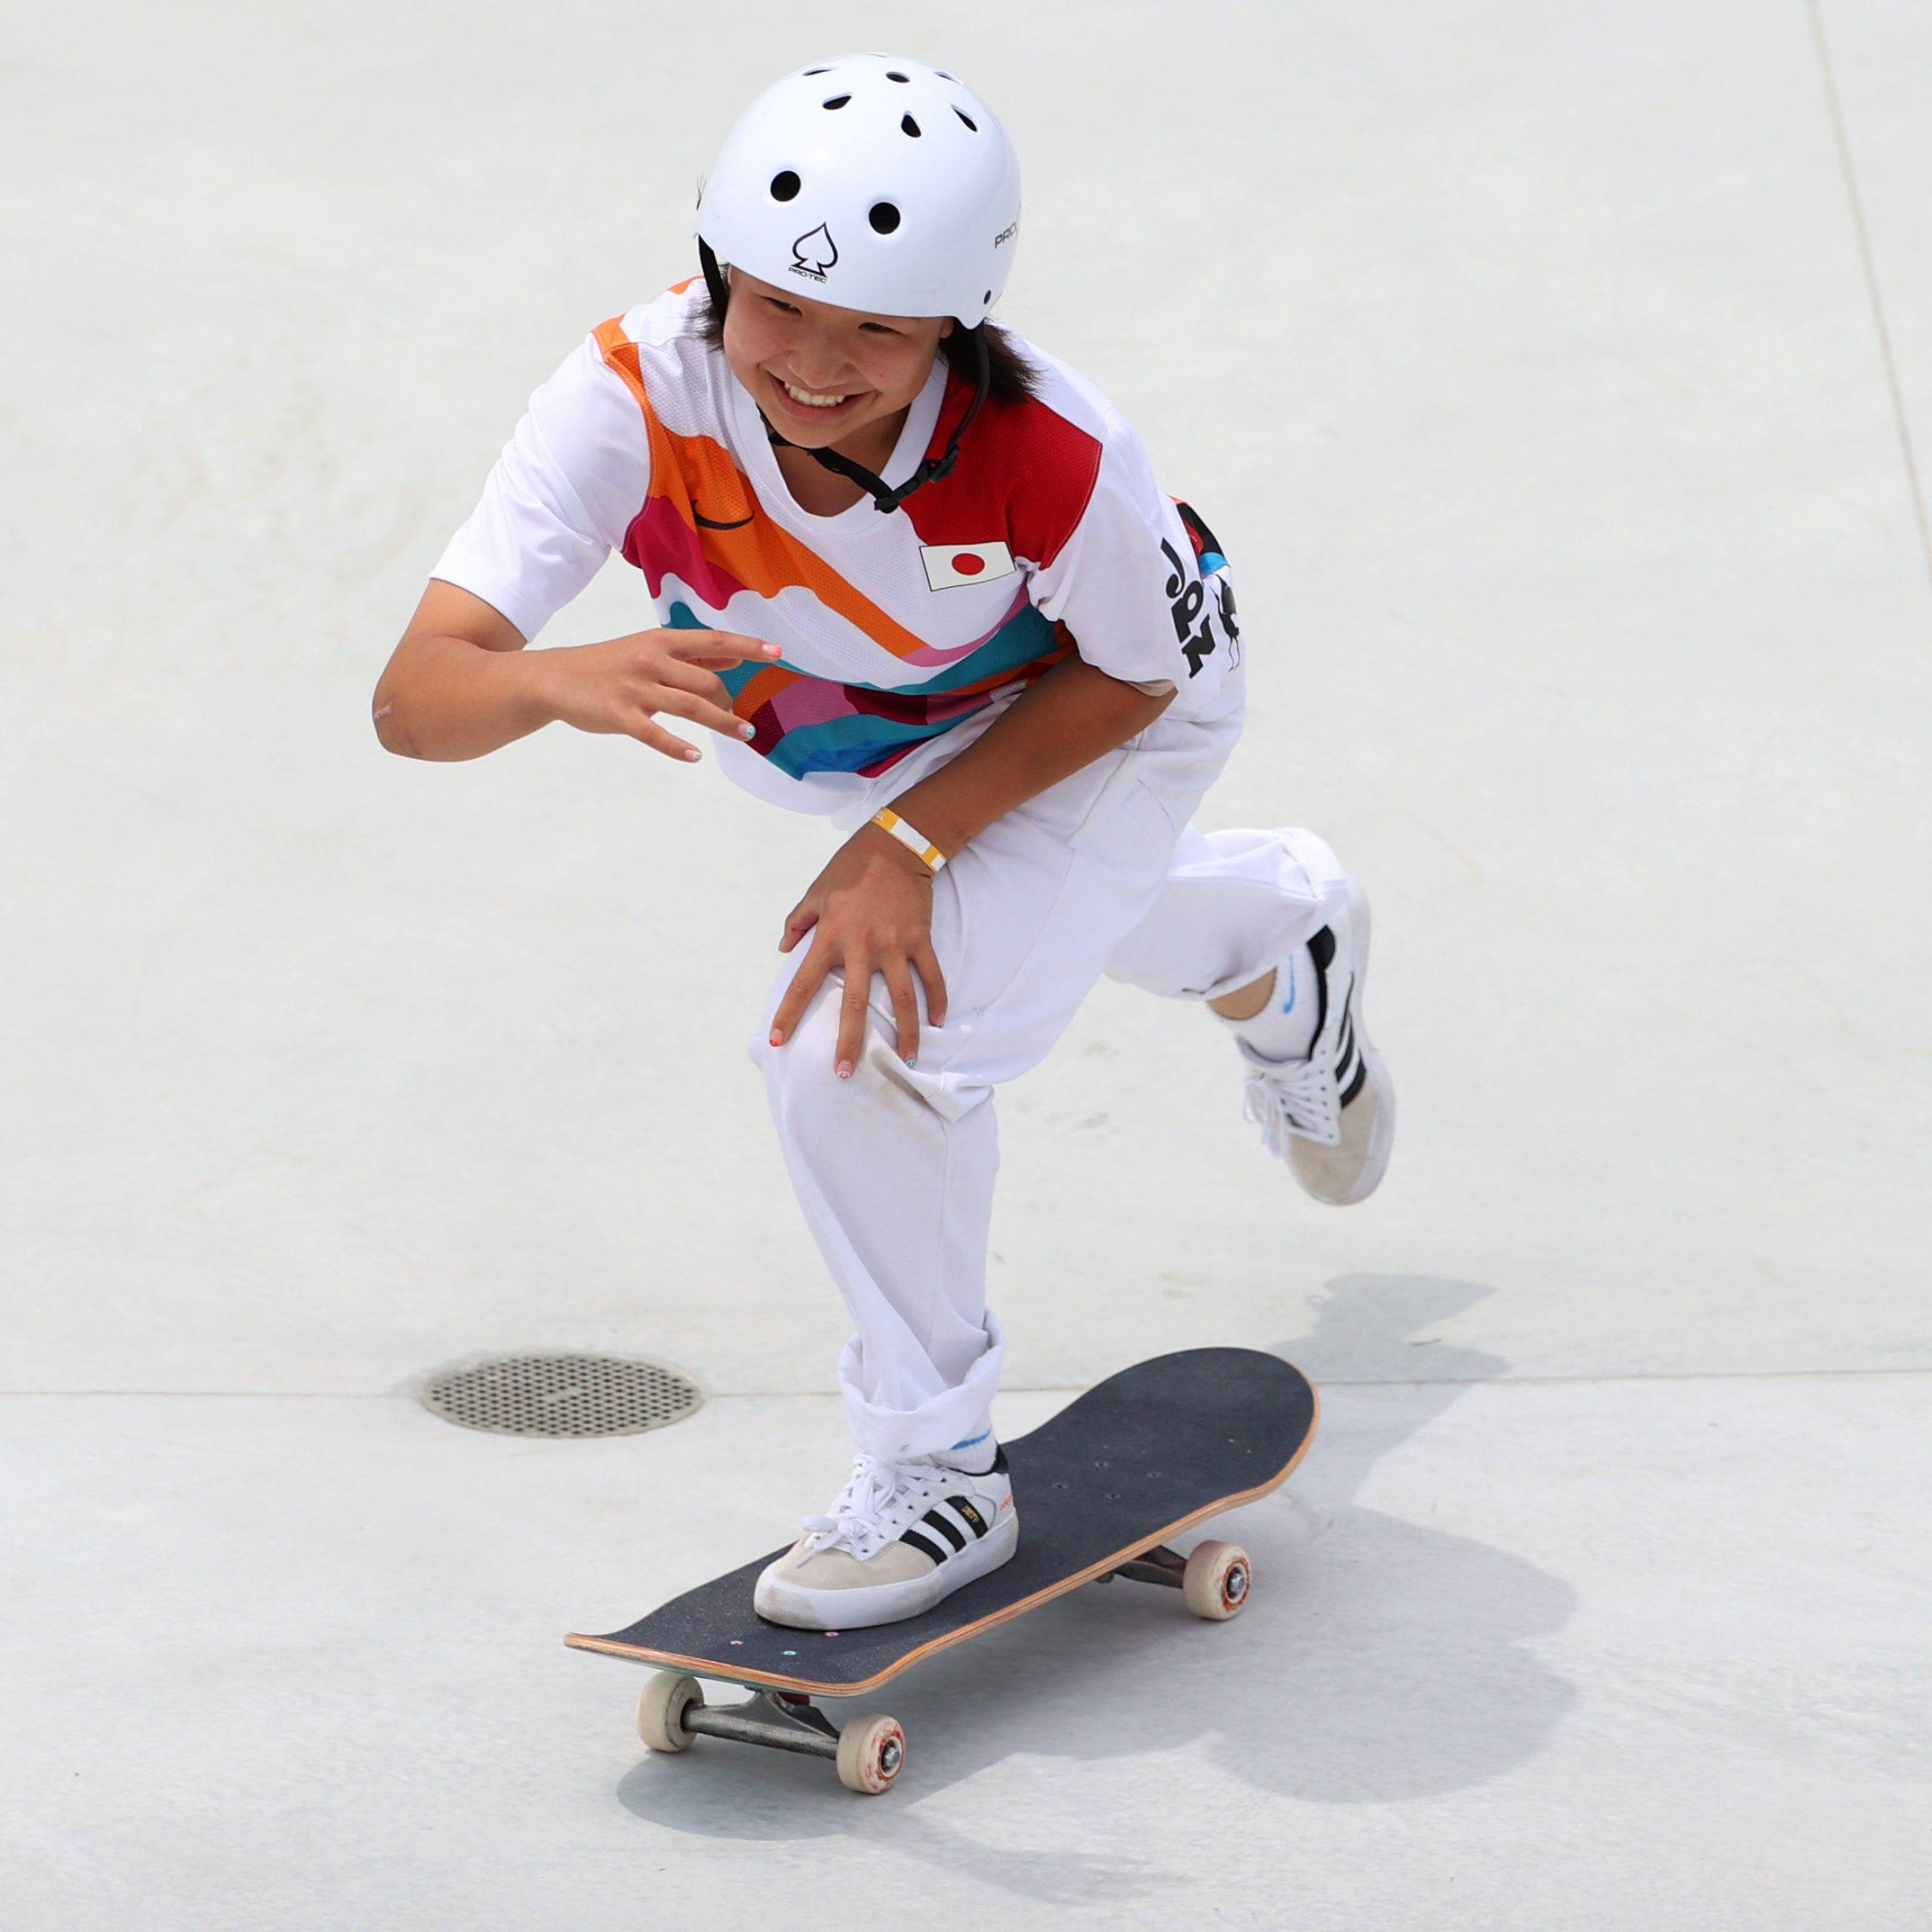 Momiji Yishiya fue una de las medallistas en skate olímpico en las competencias de Tokio 2020. 